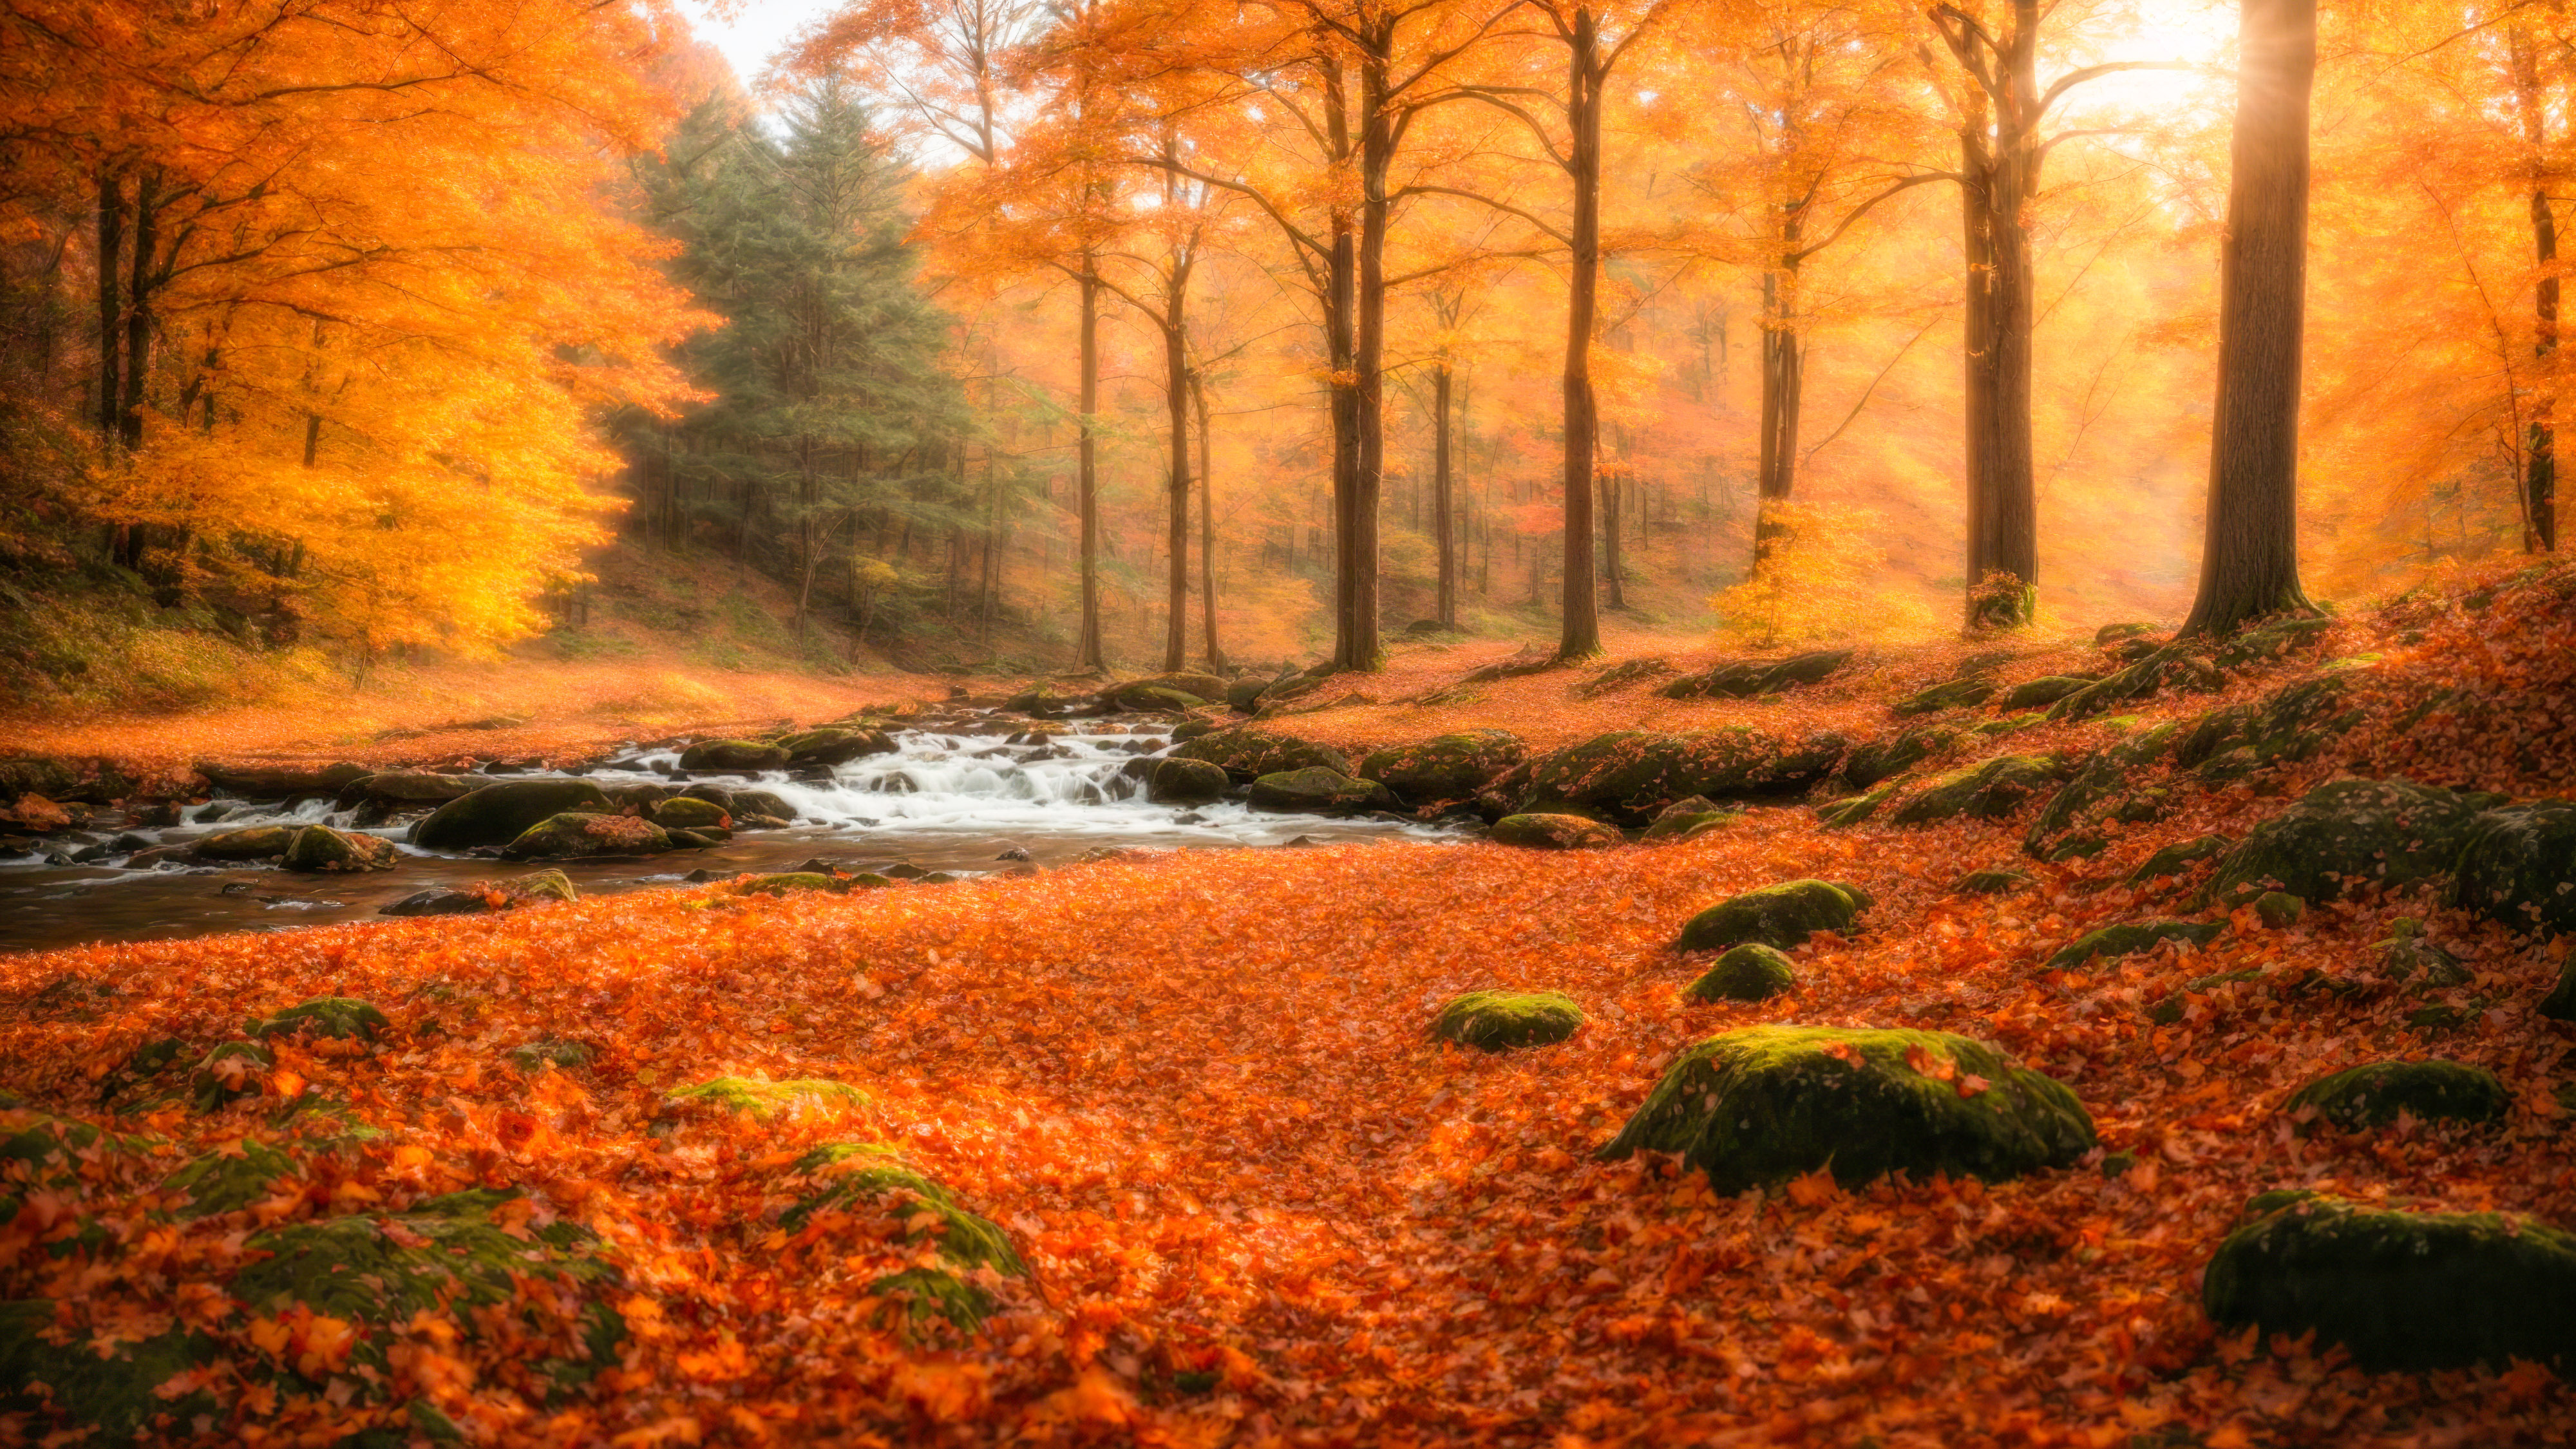 Laissez-vous hypnotiser par notre beau fond d'écran de nature en HD, présentant une scène de forêt tranquille avec un ruisseau sinueux, entouré d'un feuillage d'automne vibrant, et laissez votre écran devenir une fenêtre vers le cœur de la forêt.